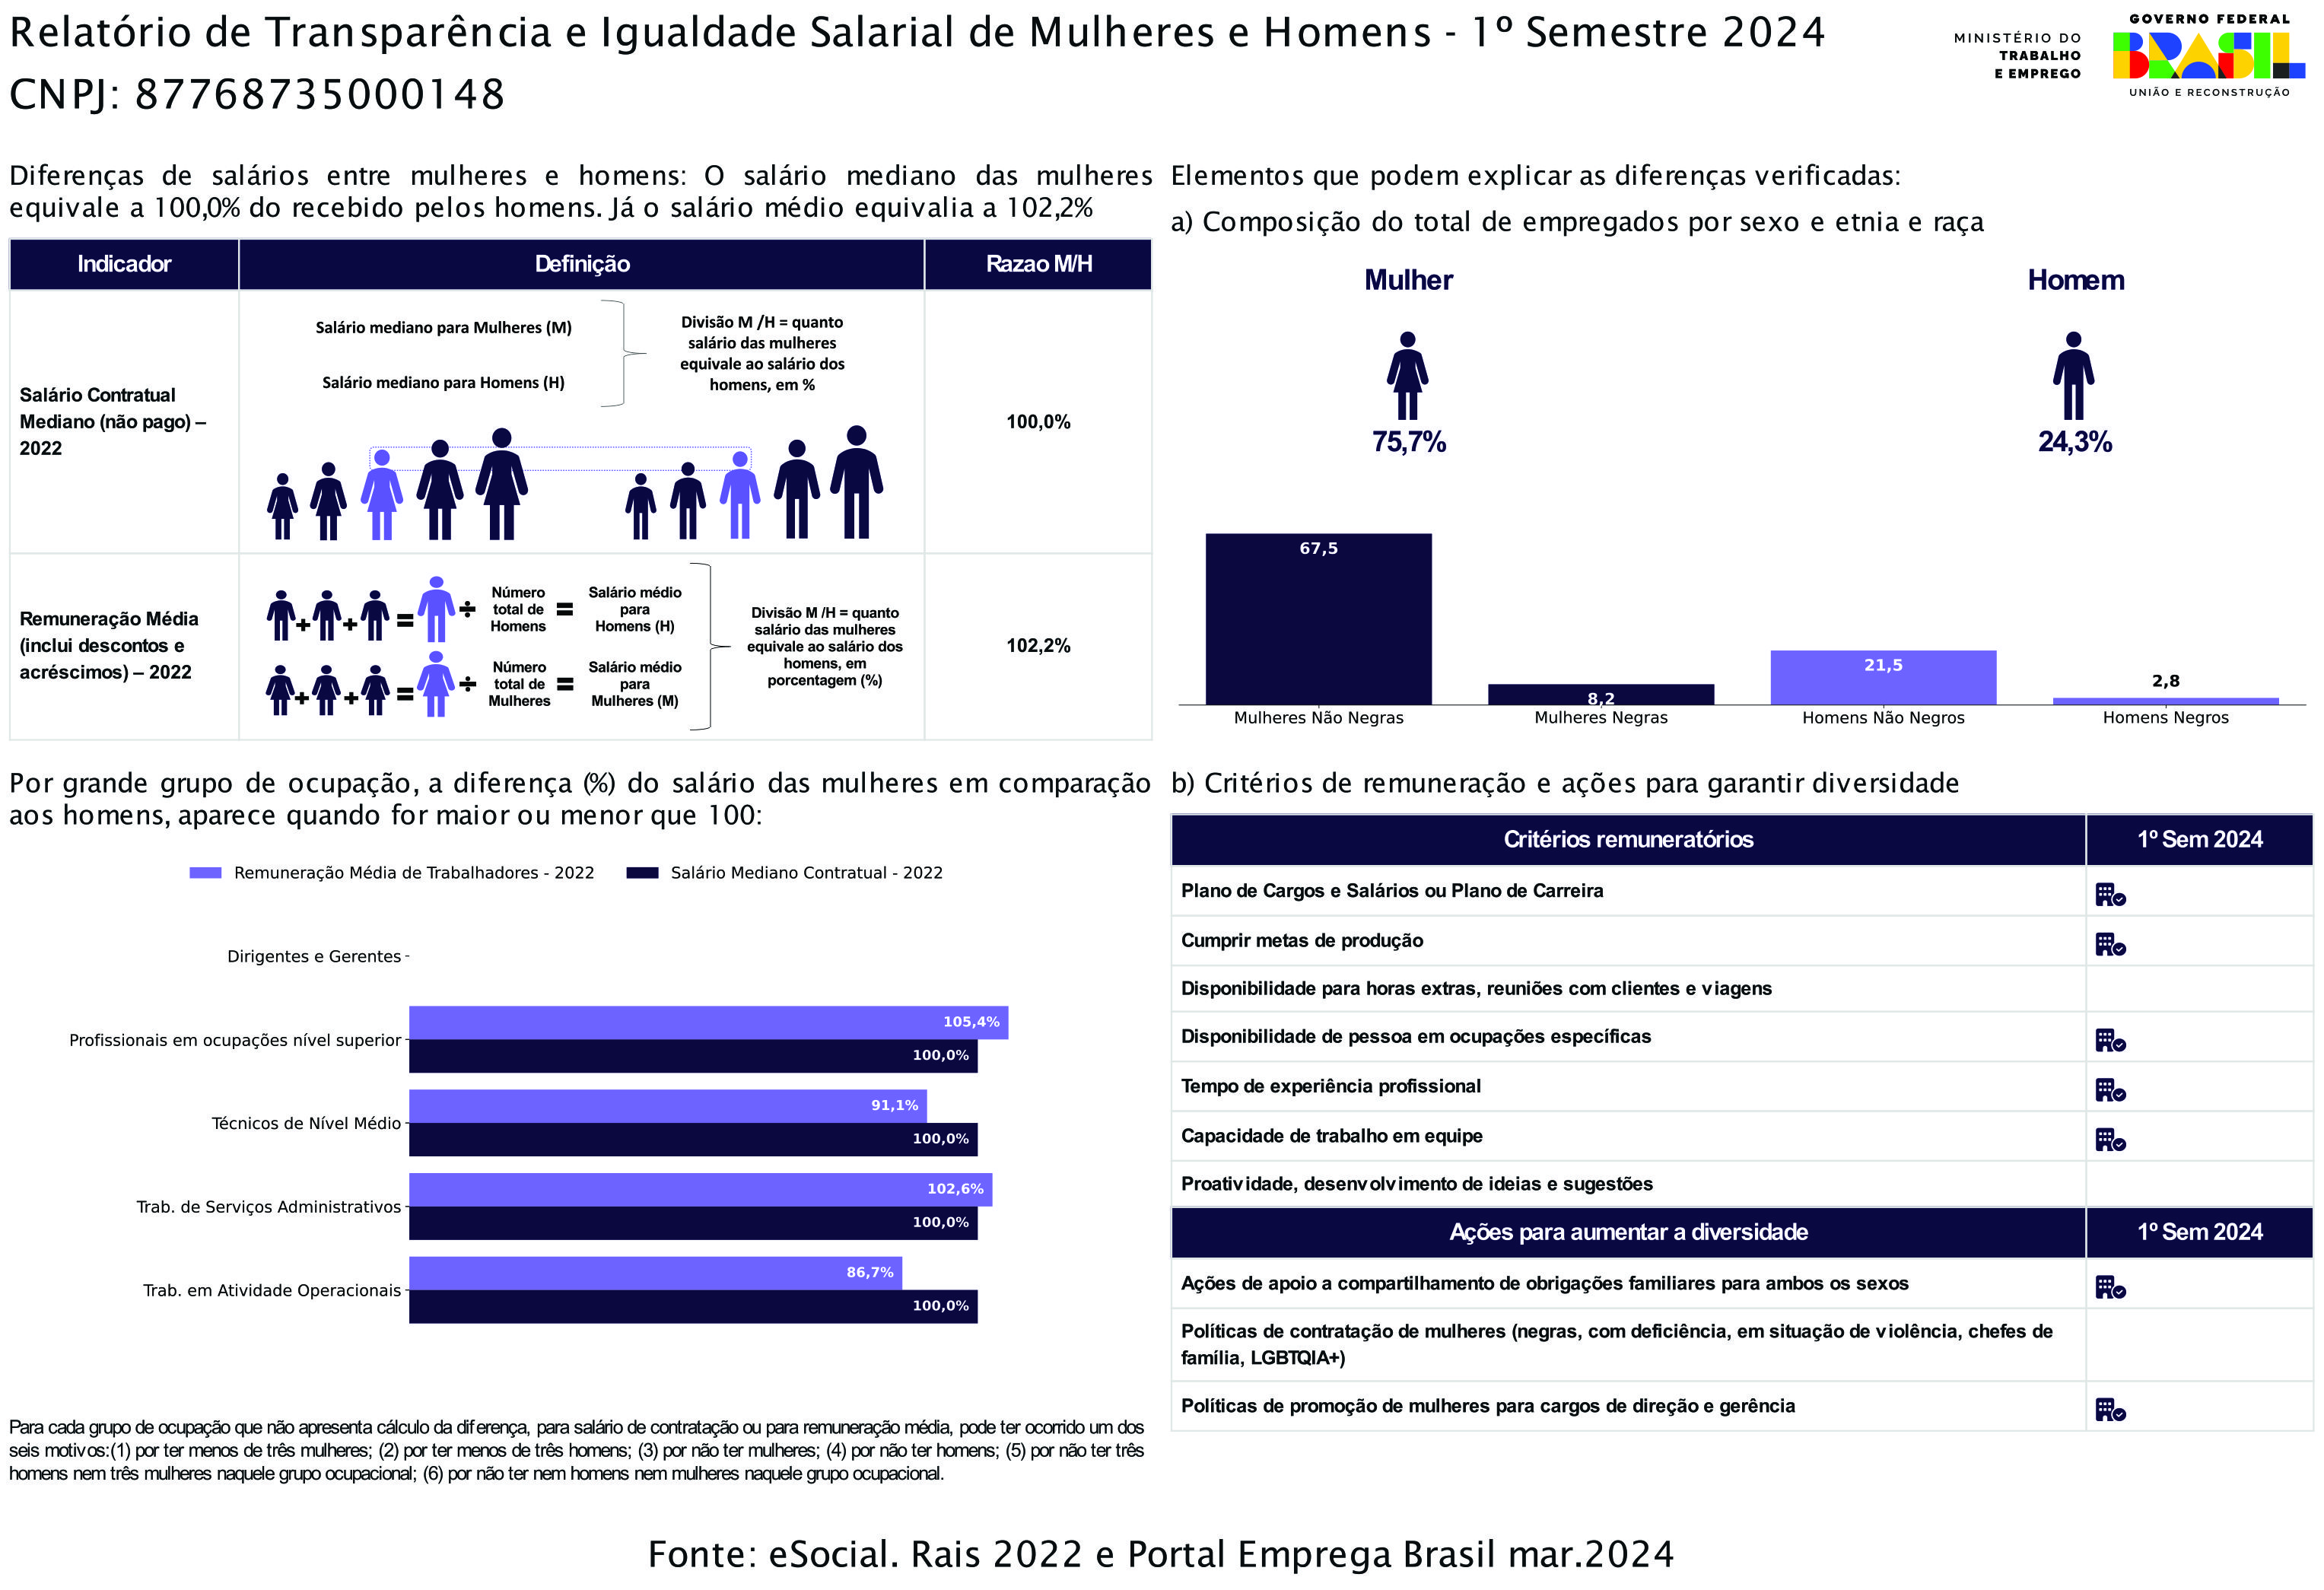 Relatório de Transparência e Igualdade Salarial de Homens e Mulheres